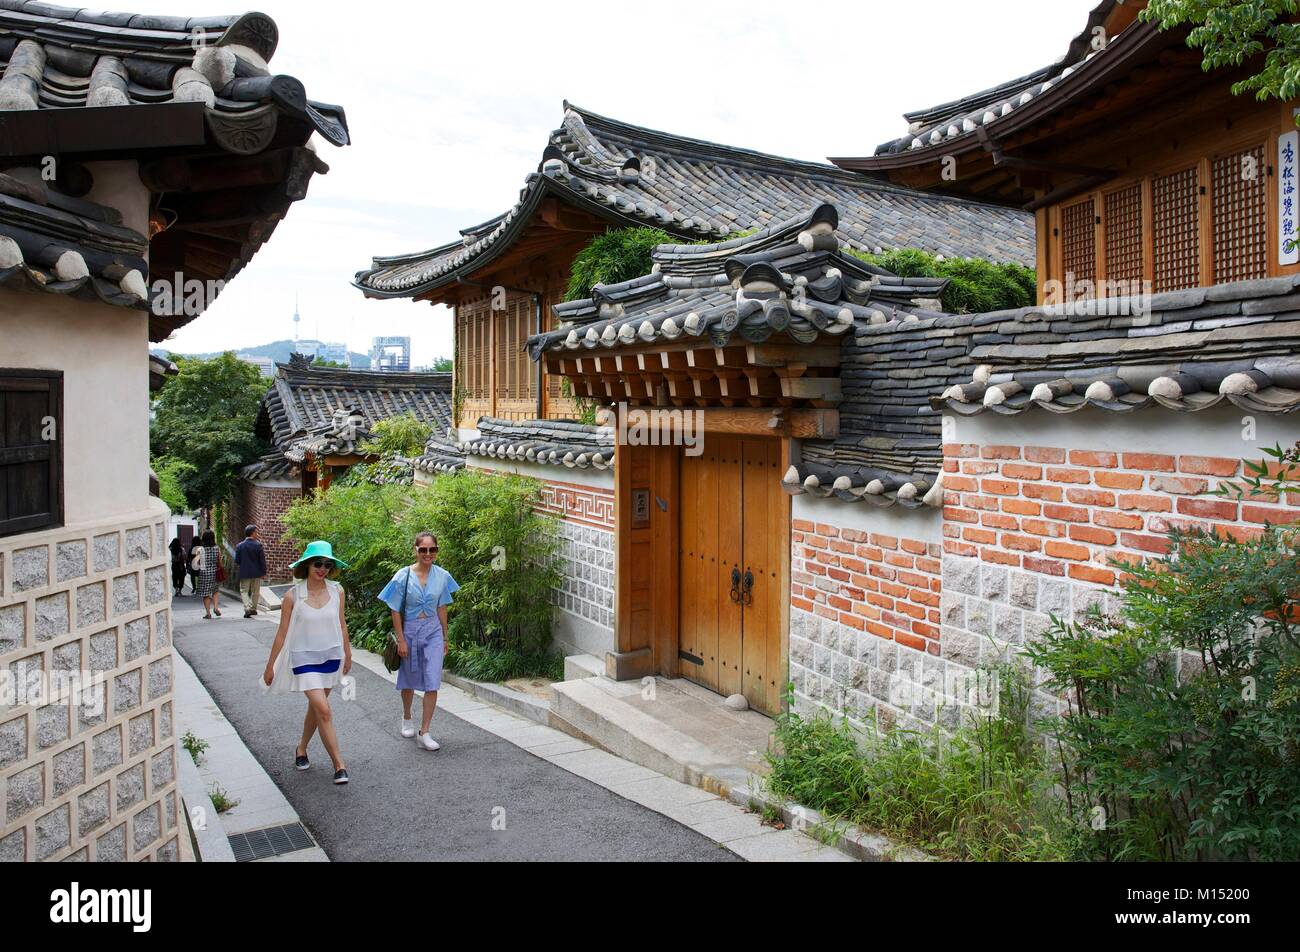 Corea del Sur, Seúl, los turistas japoneses en un callejón del barrio viejo Bukchon Hanok village Foto de stock